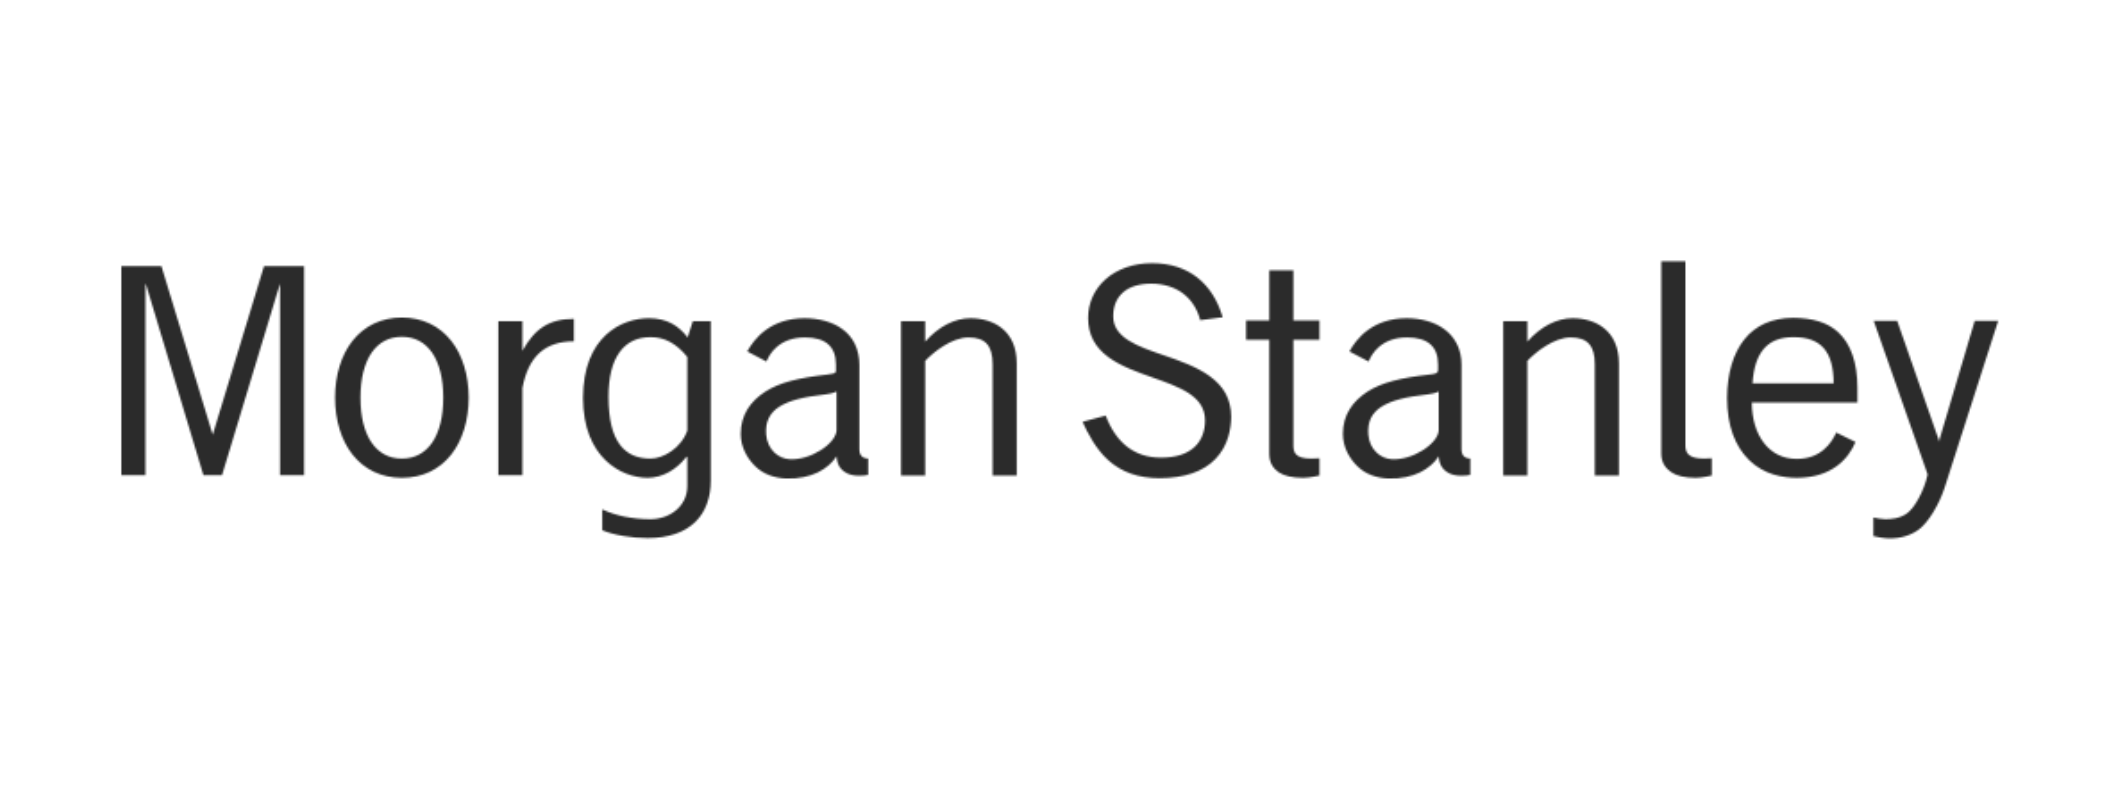 Morgan Stanley-2